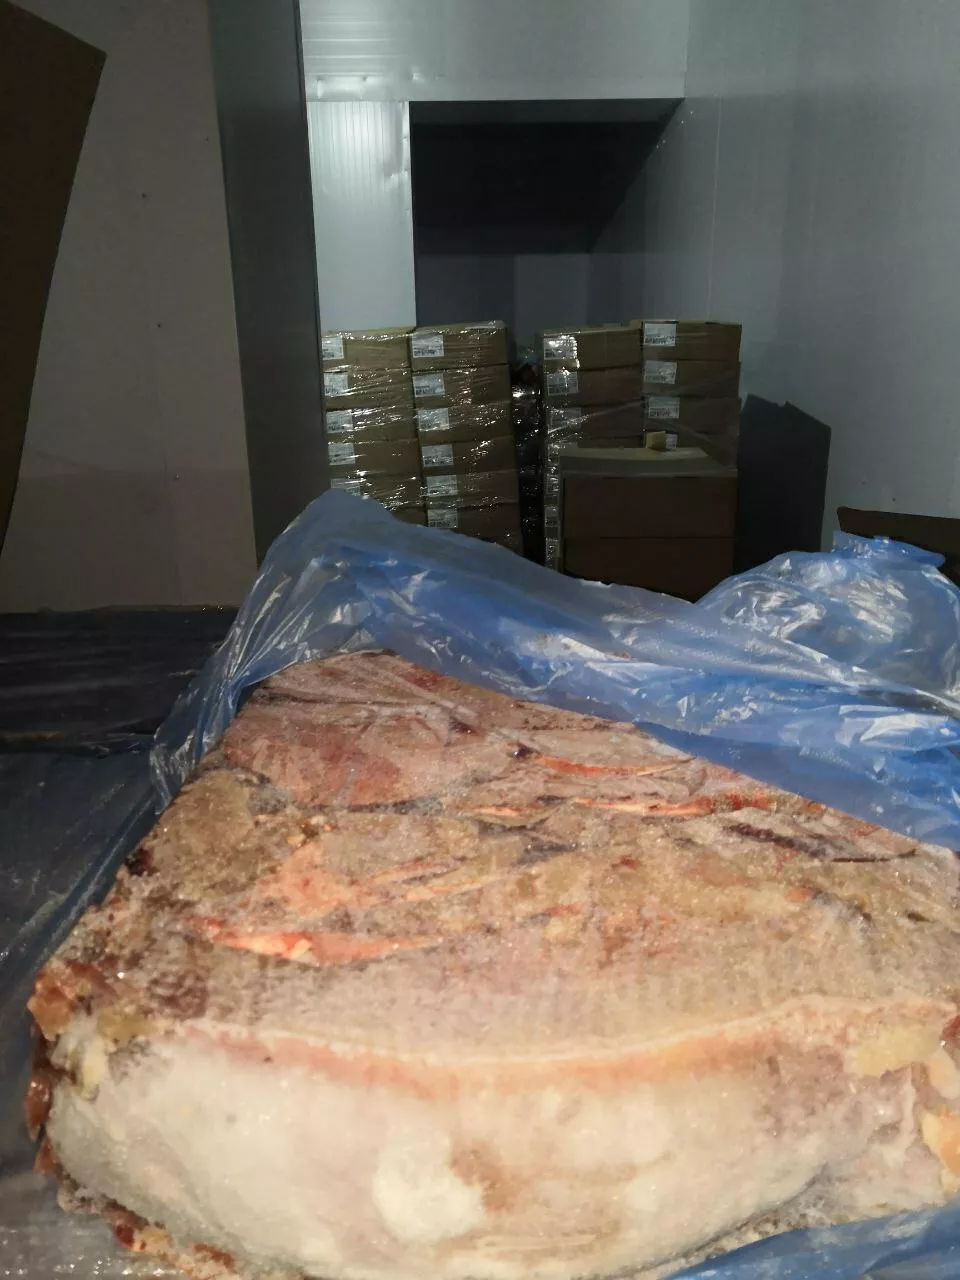 печень свиная, 4 компартмент в Владивостоке и Приморском крае